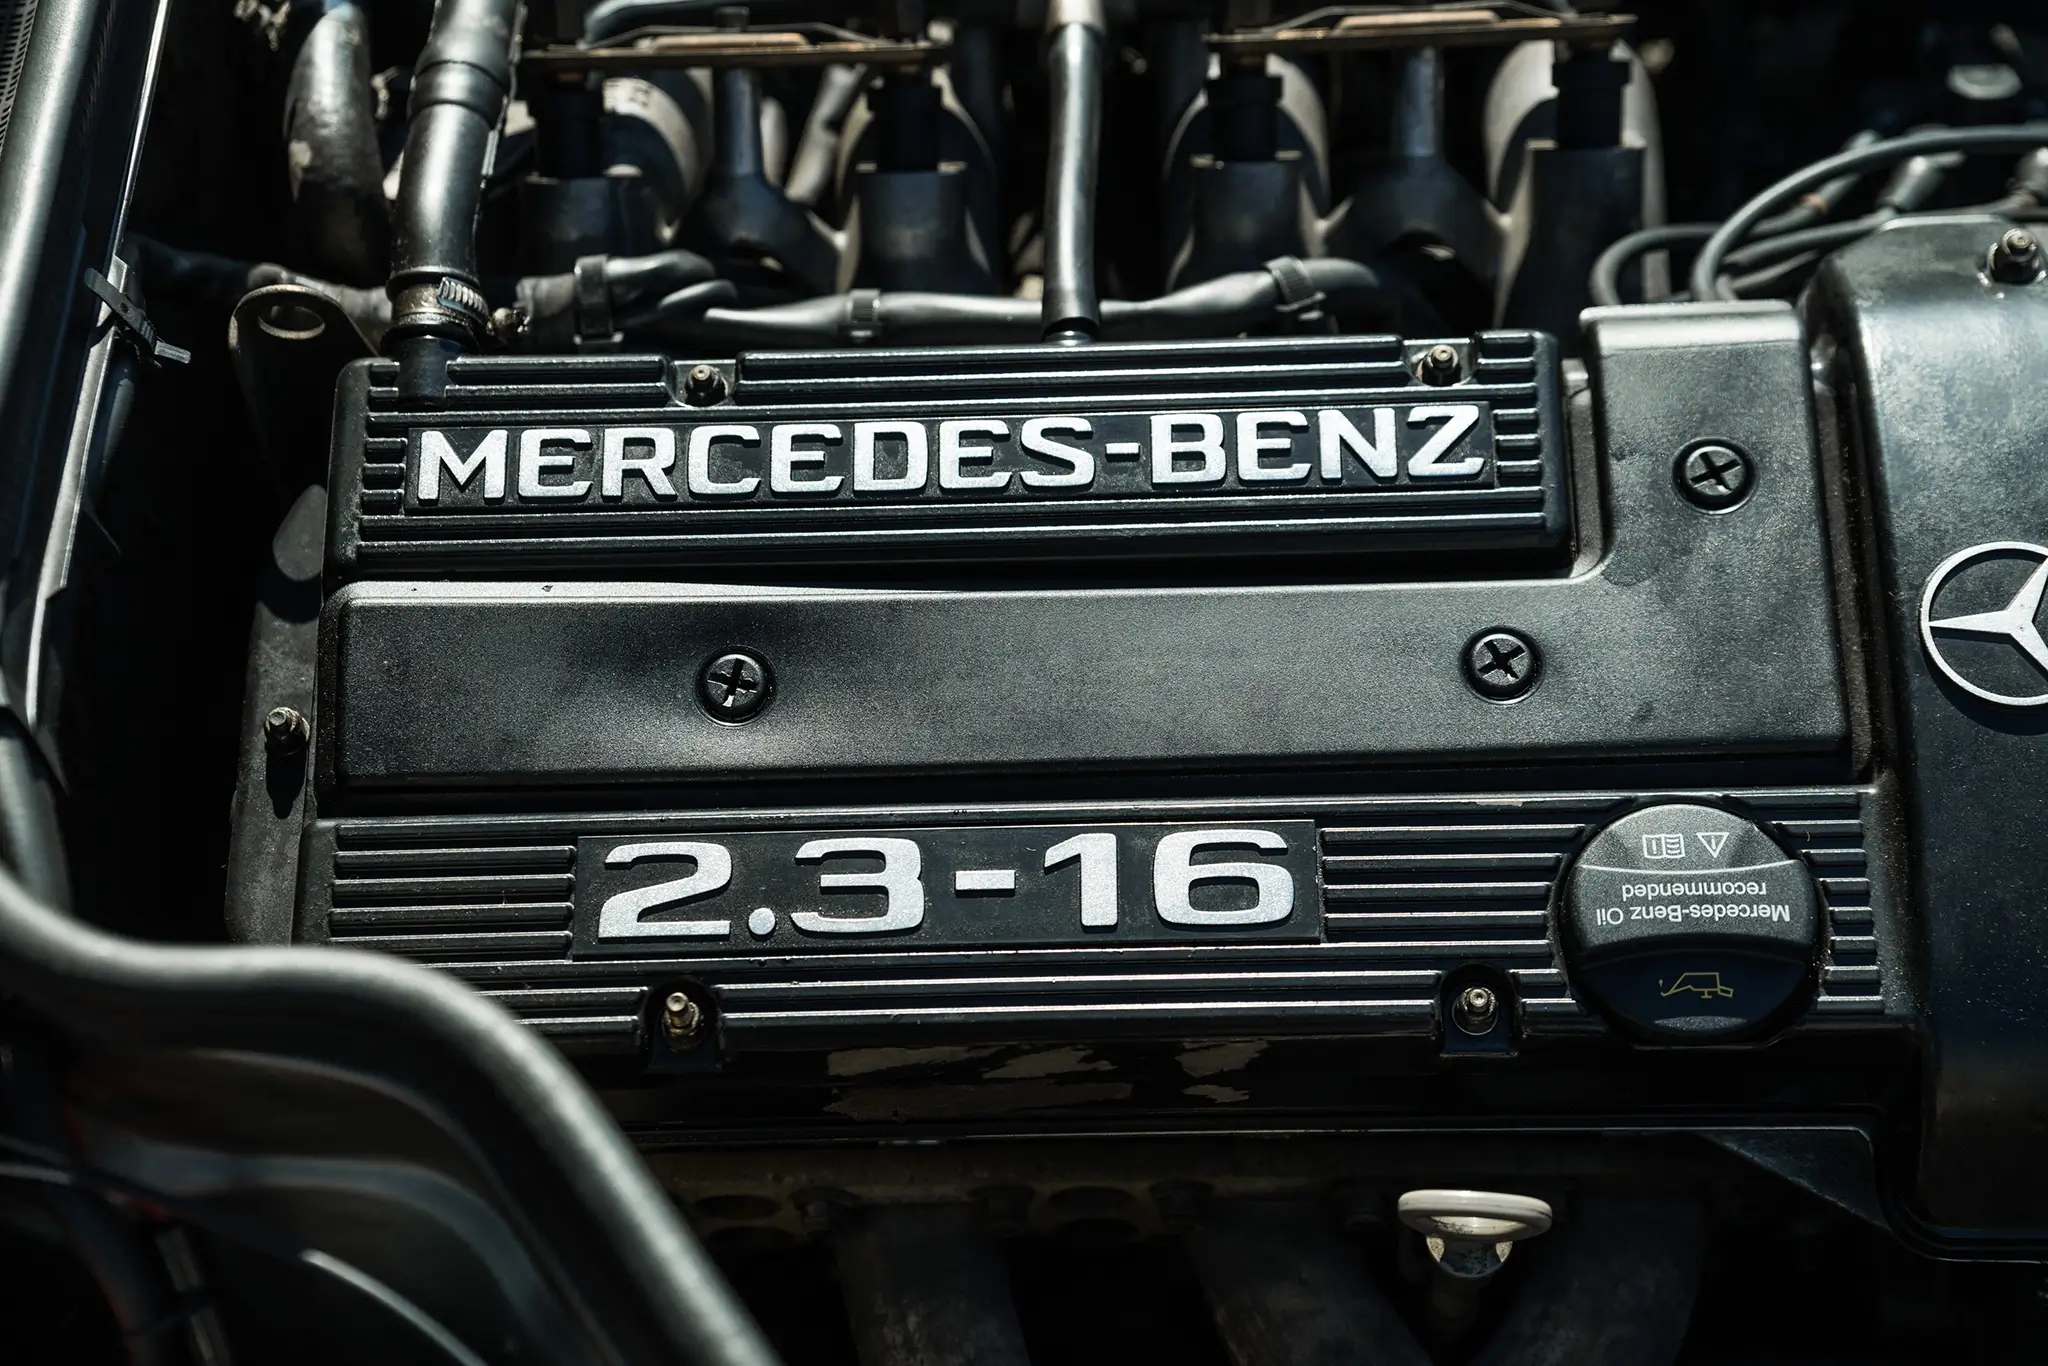 Motor do Mercedes-Benz 190 E 2.3-16